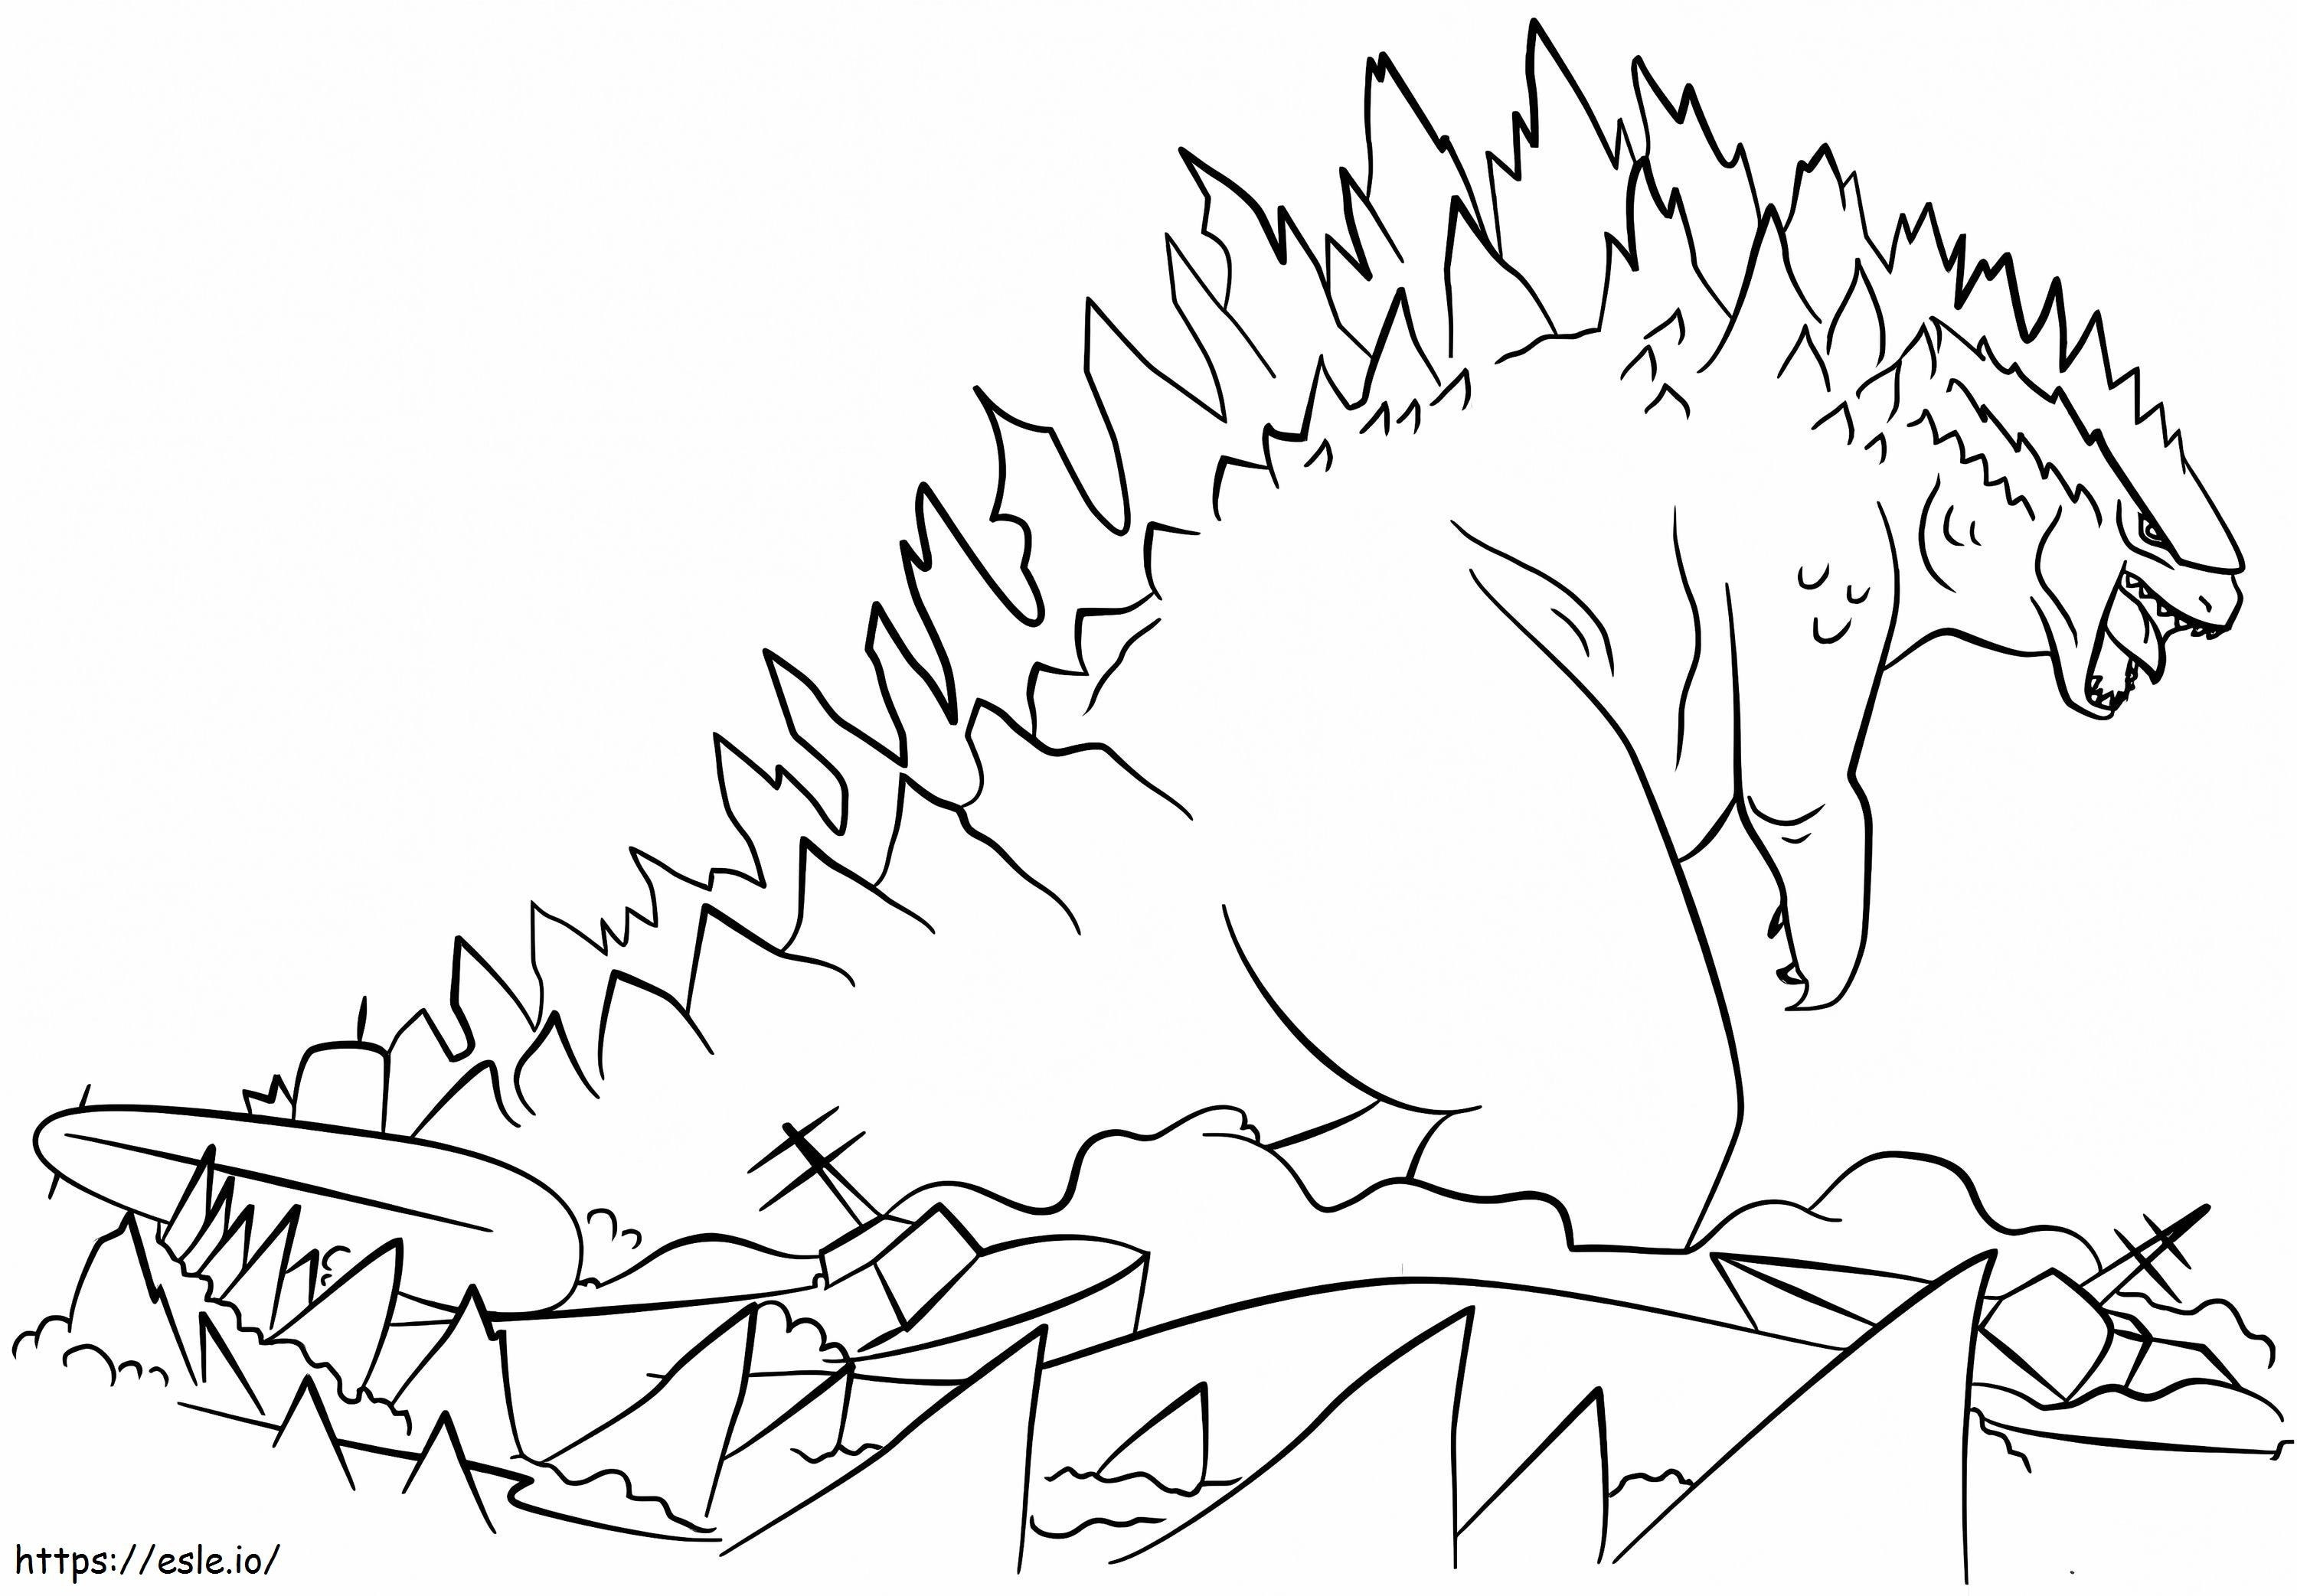 Amazing Godzilla coloring page